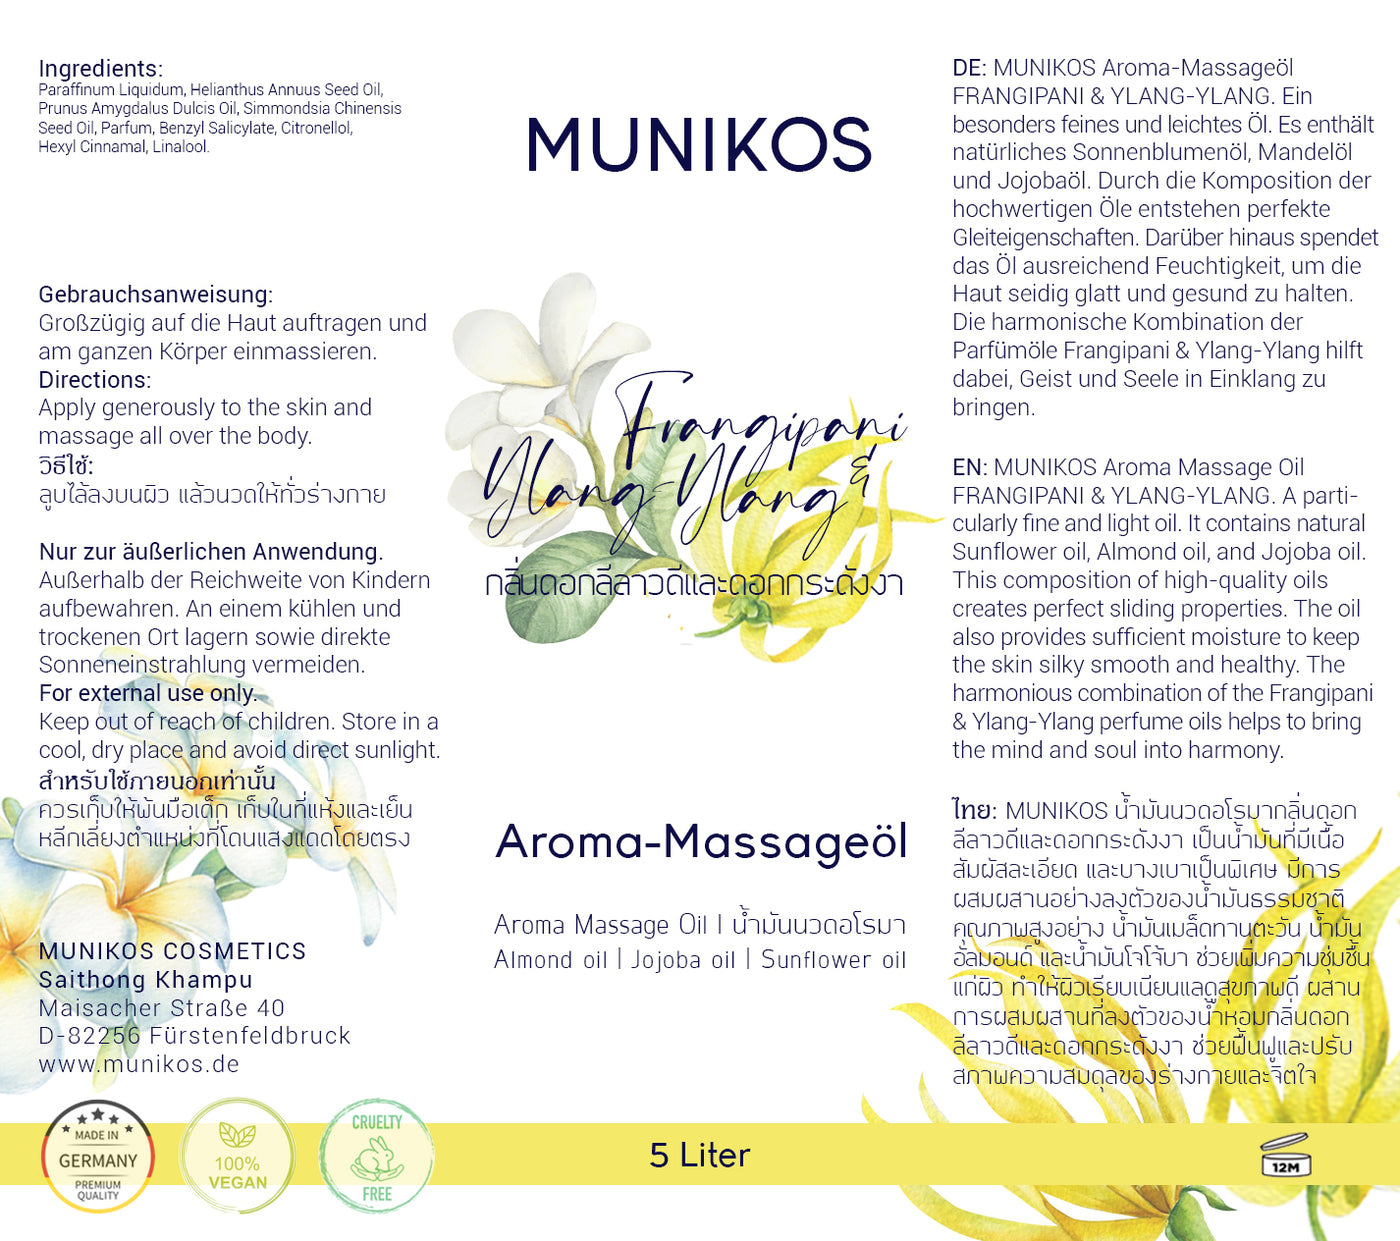 Aroma Massage Oil FRANGIPANI & YLANG-YLANG